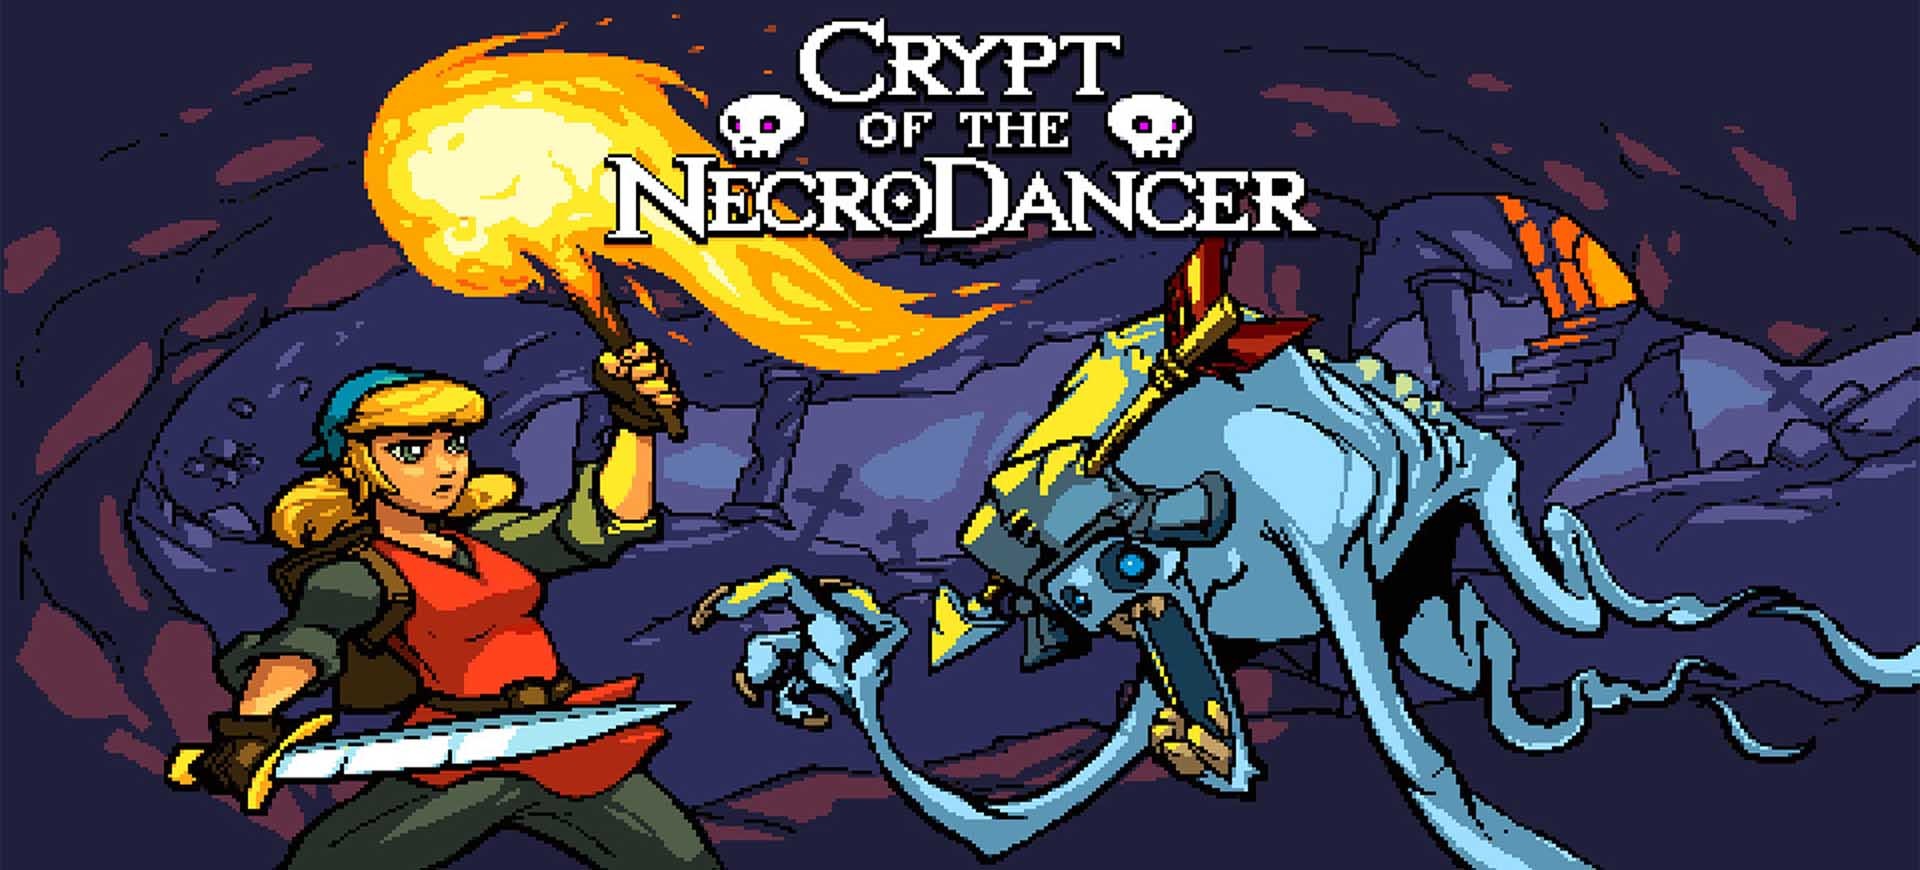 crypt-of-the-necrodancer-danh-gia-game